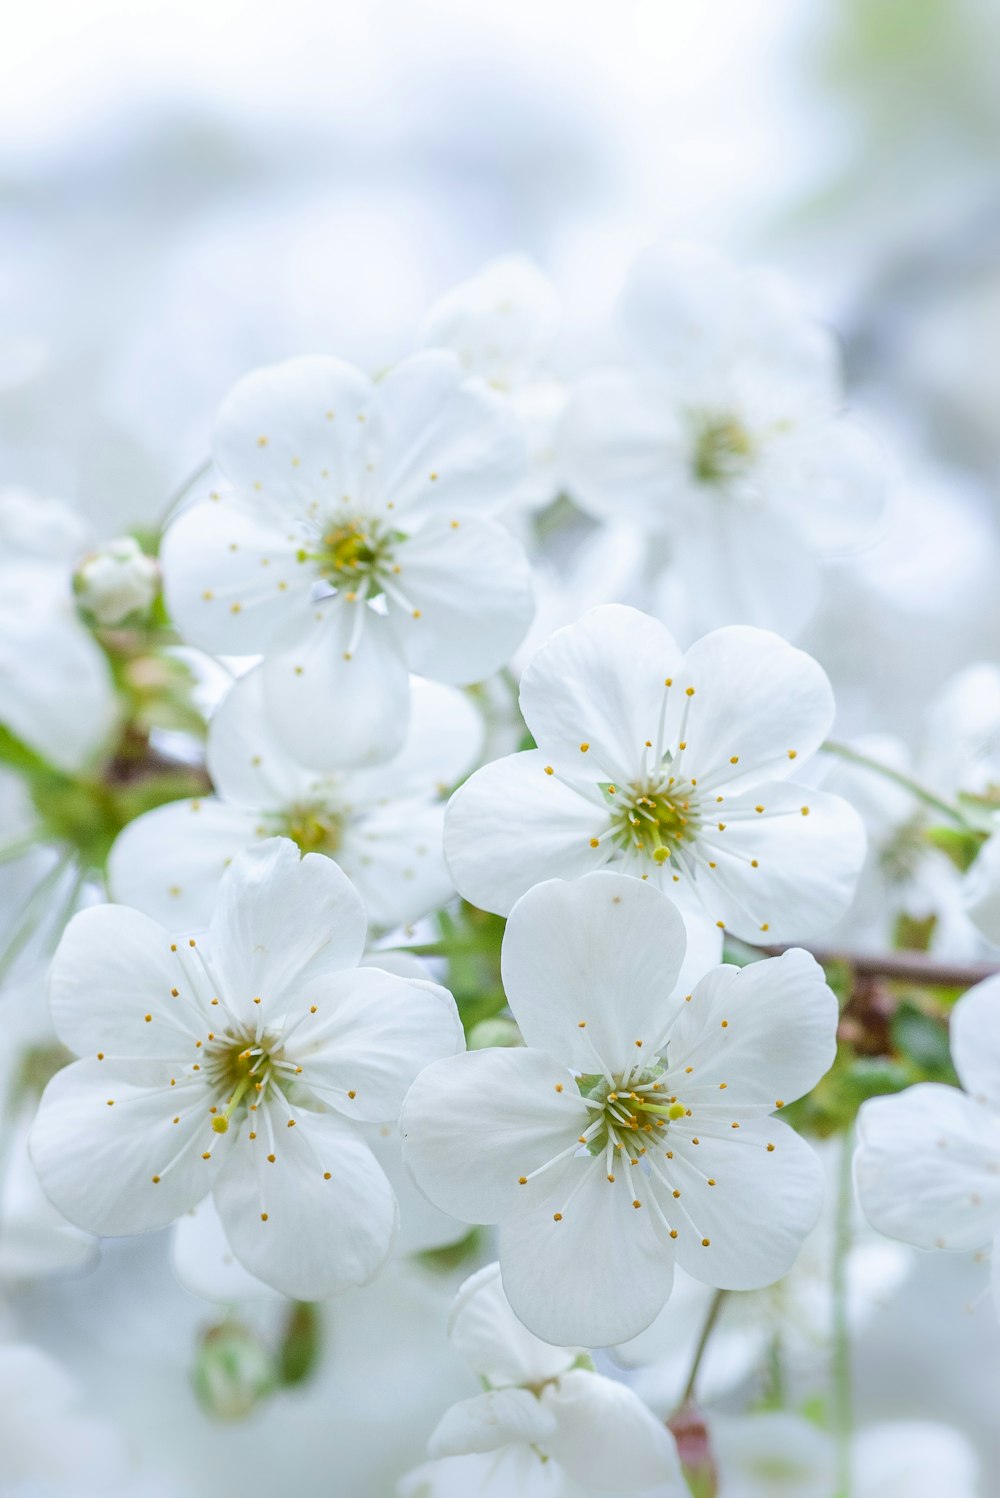 flores de cerezo blanco en flor